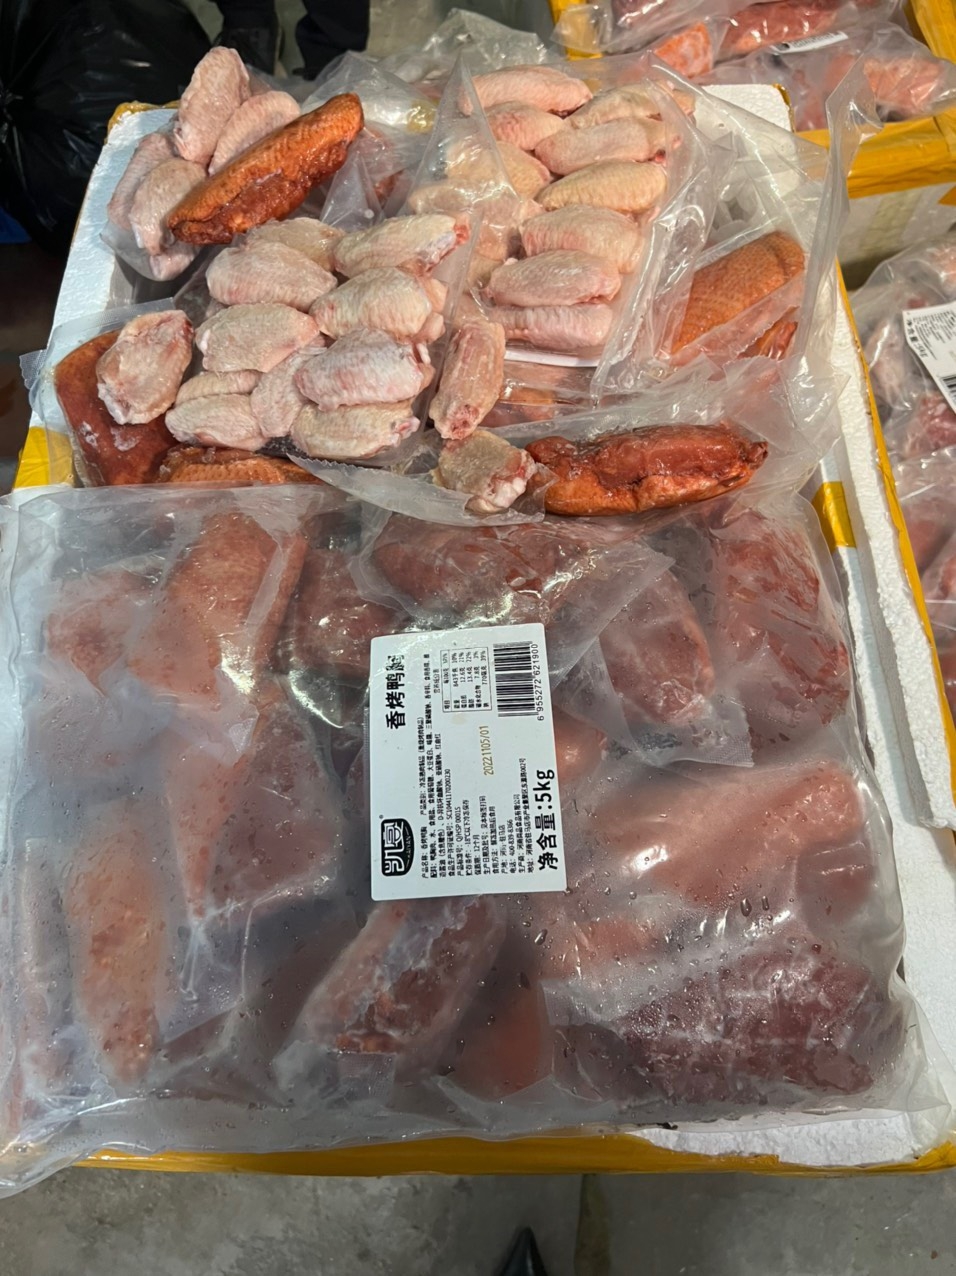 Ức vịt và cánh gà không có nguồn gốc xuất xứ, bao bì in chữ nước ngoài được tuồn vào thị trường